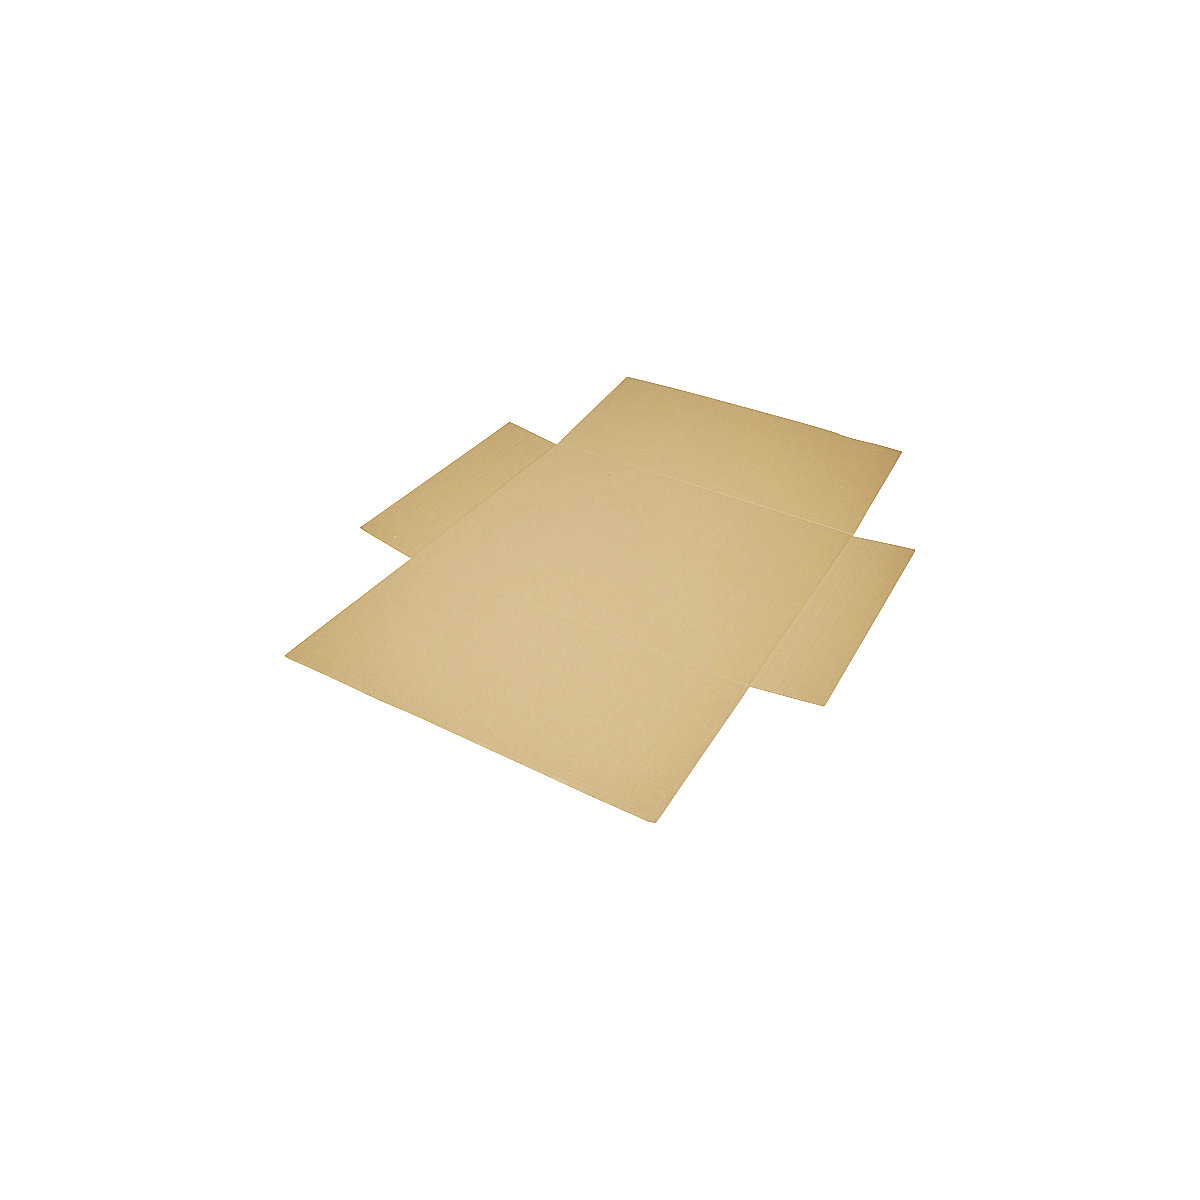 Imballaggio incrociato, in pezzo unico, a 1 parete, marrone, lungh. x largh. 600 x 425 mm, altezza di riempimento 50 mm, a partire da 30 pz.-8